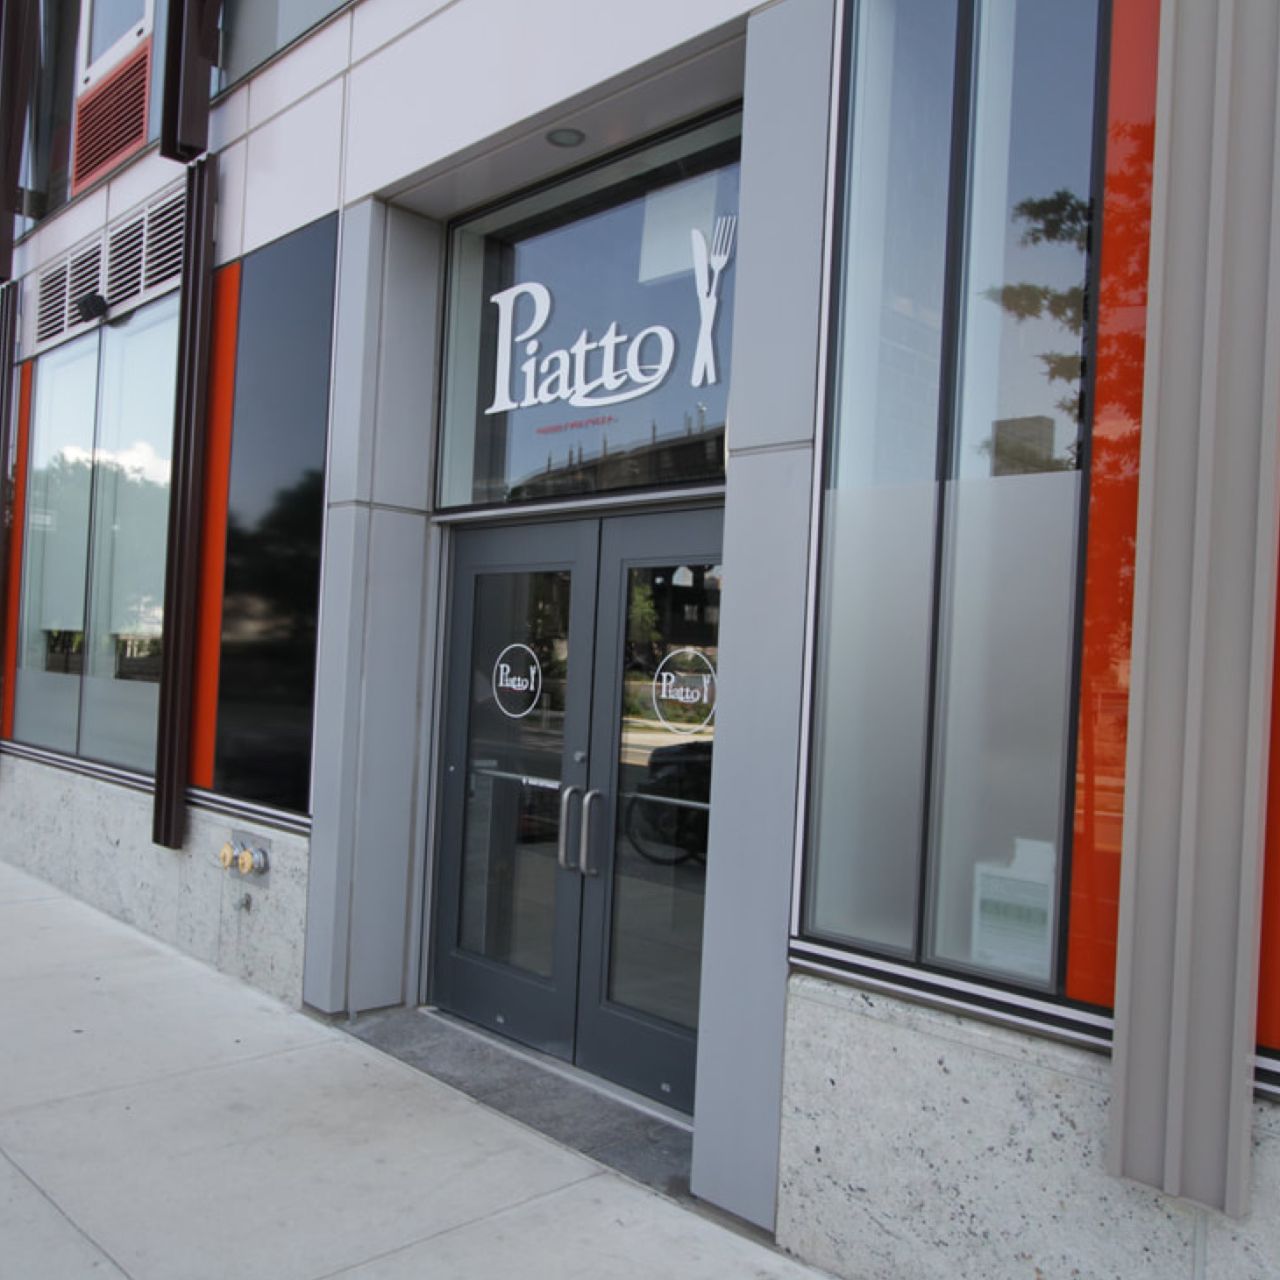 Piatto Restaurant - Long Island City, NY